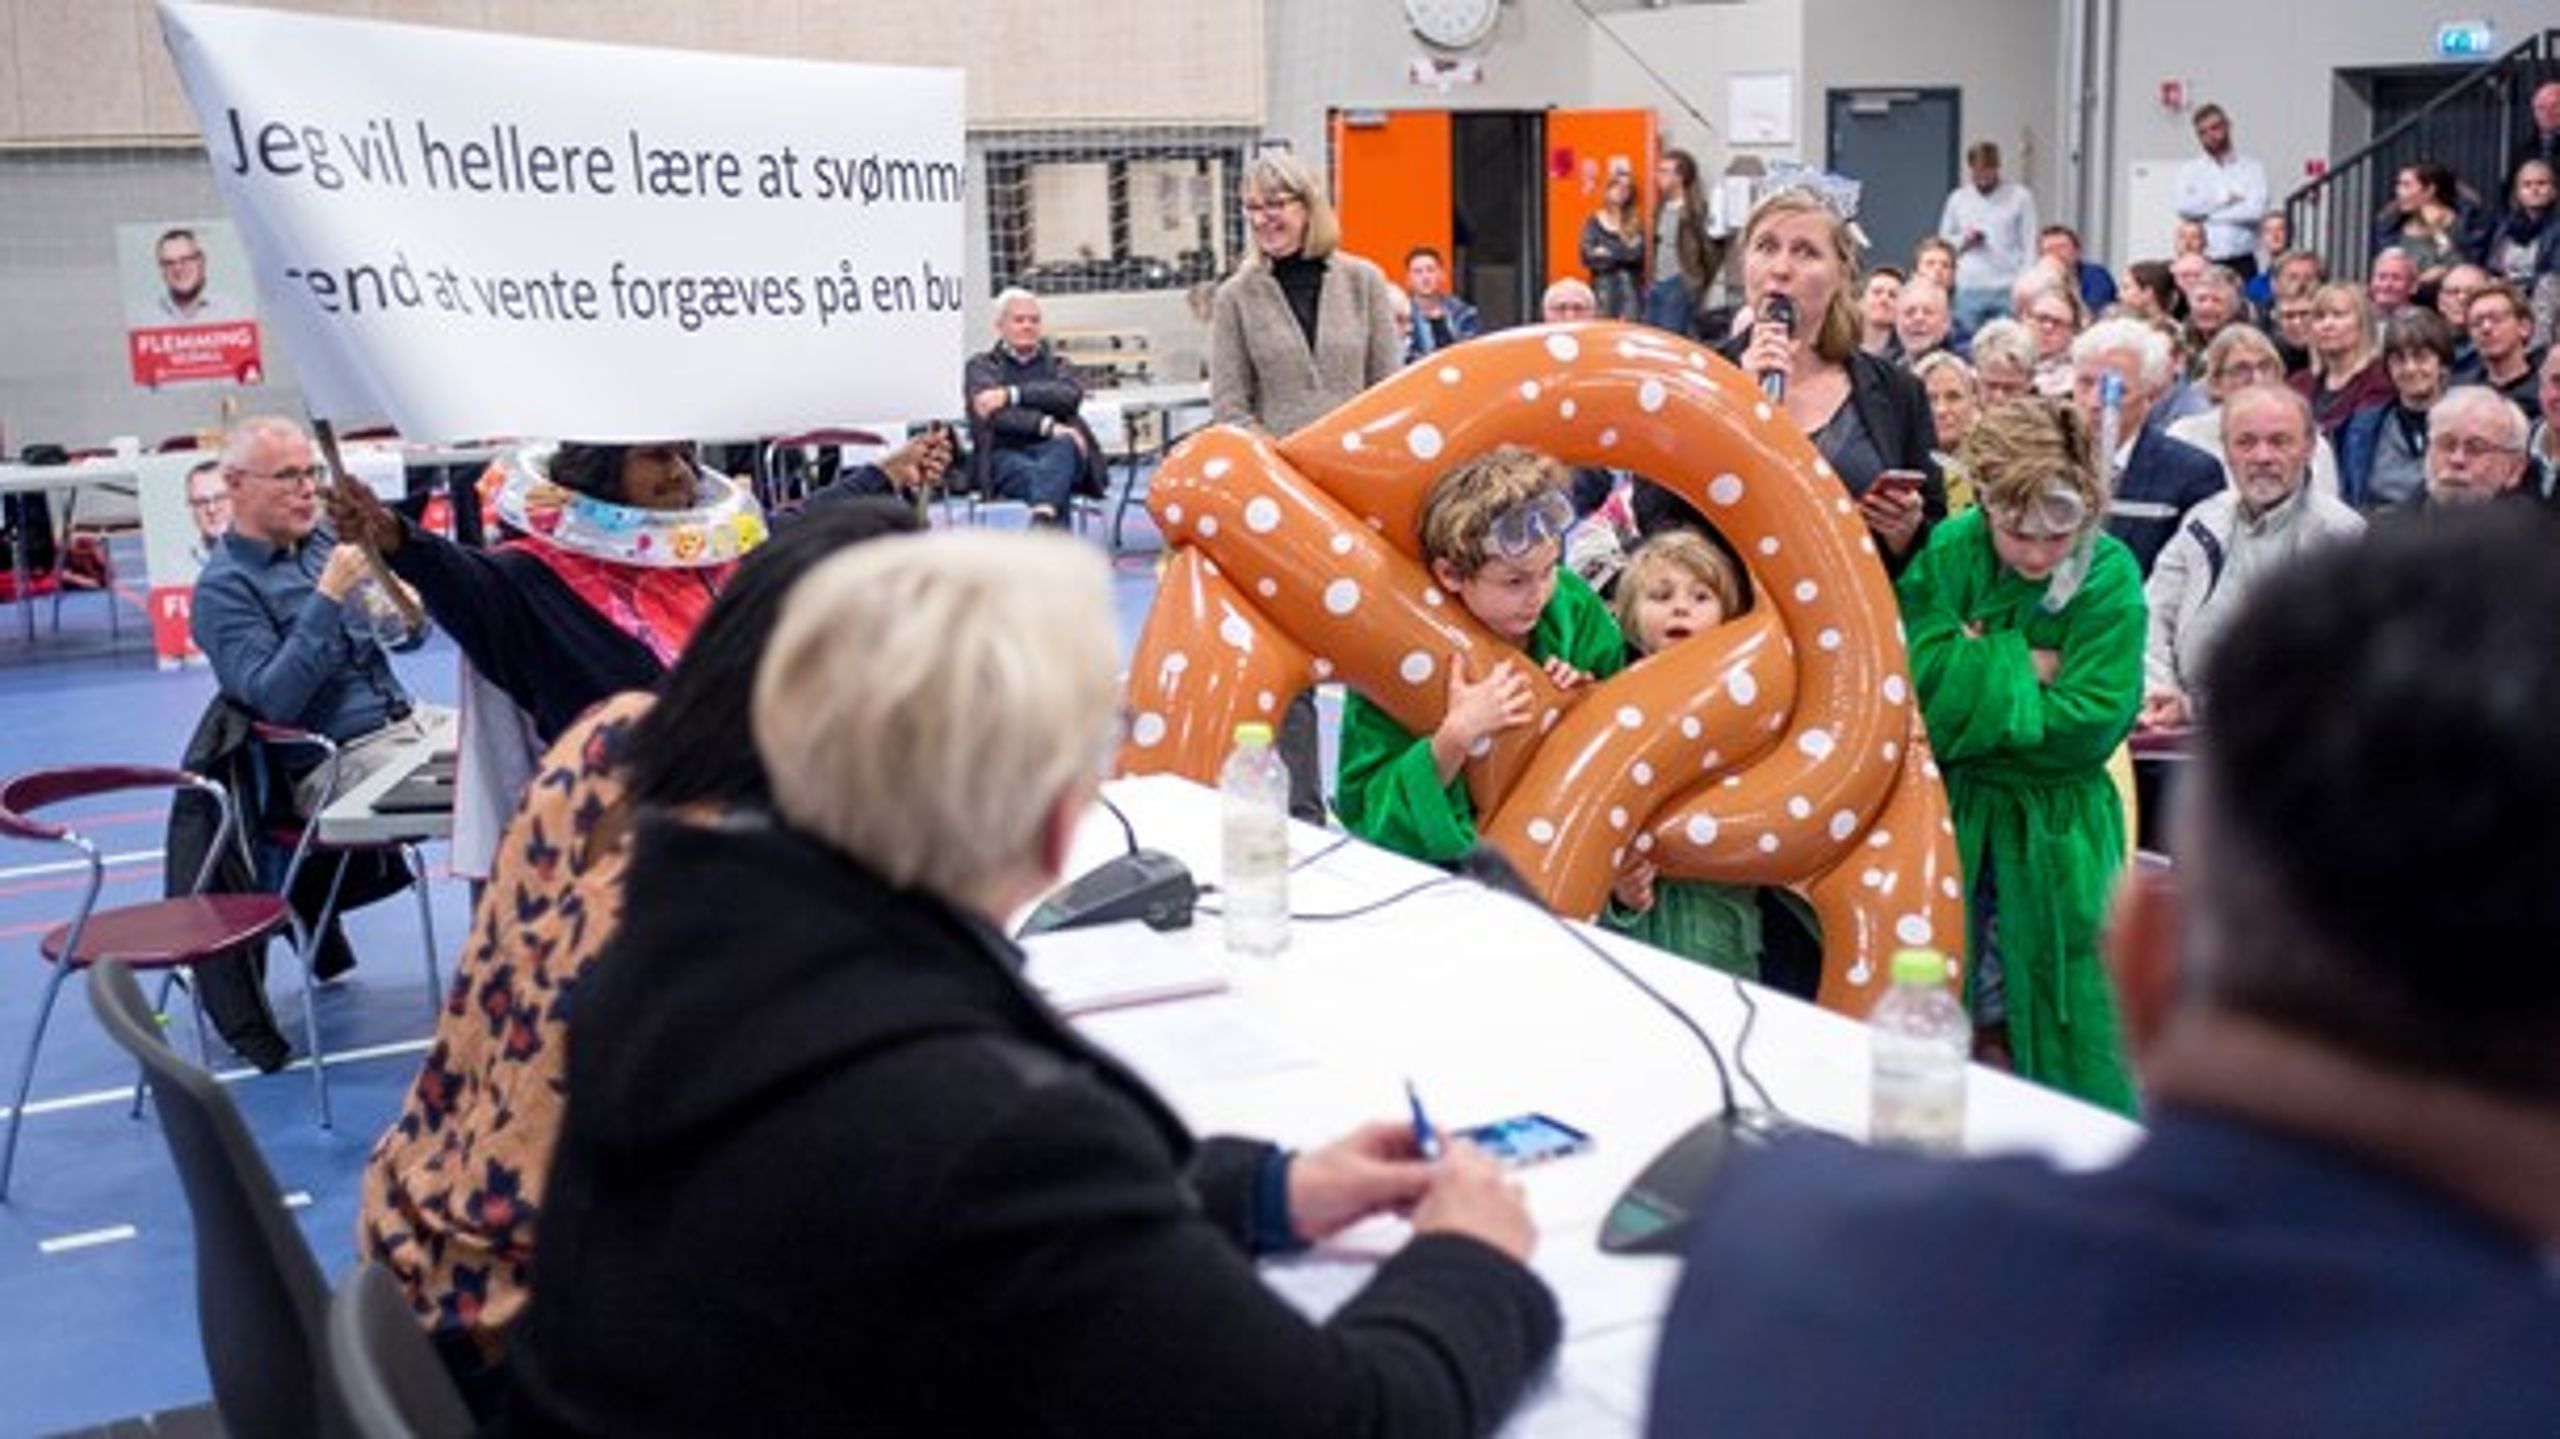 Vælgermøde i Skødstrup, Aarhus Kommune. Et oplagt emne på sådan et møde bør være cilvilsamfundets vilkår, mener Camilla Schwalbe.